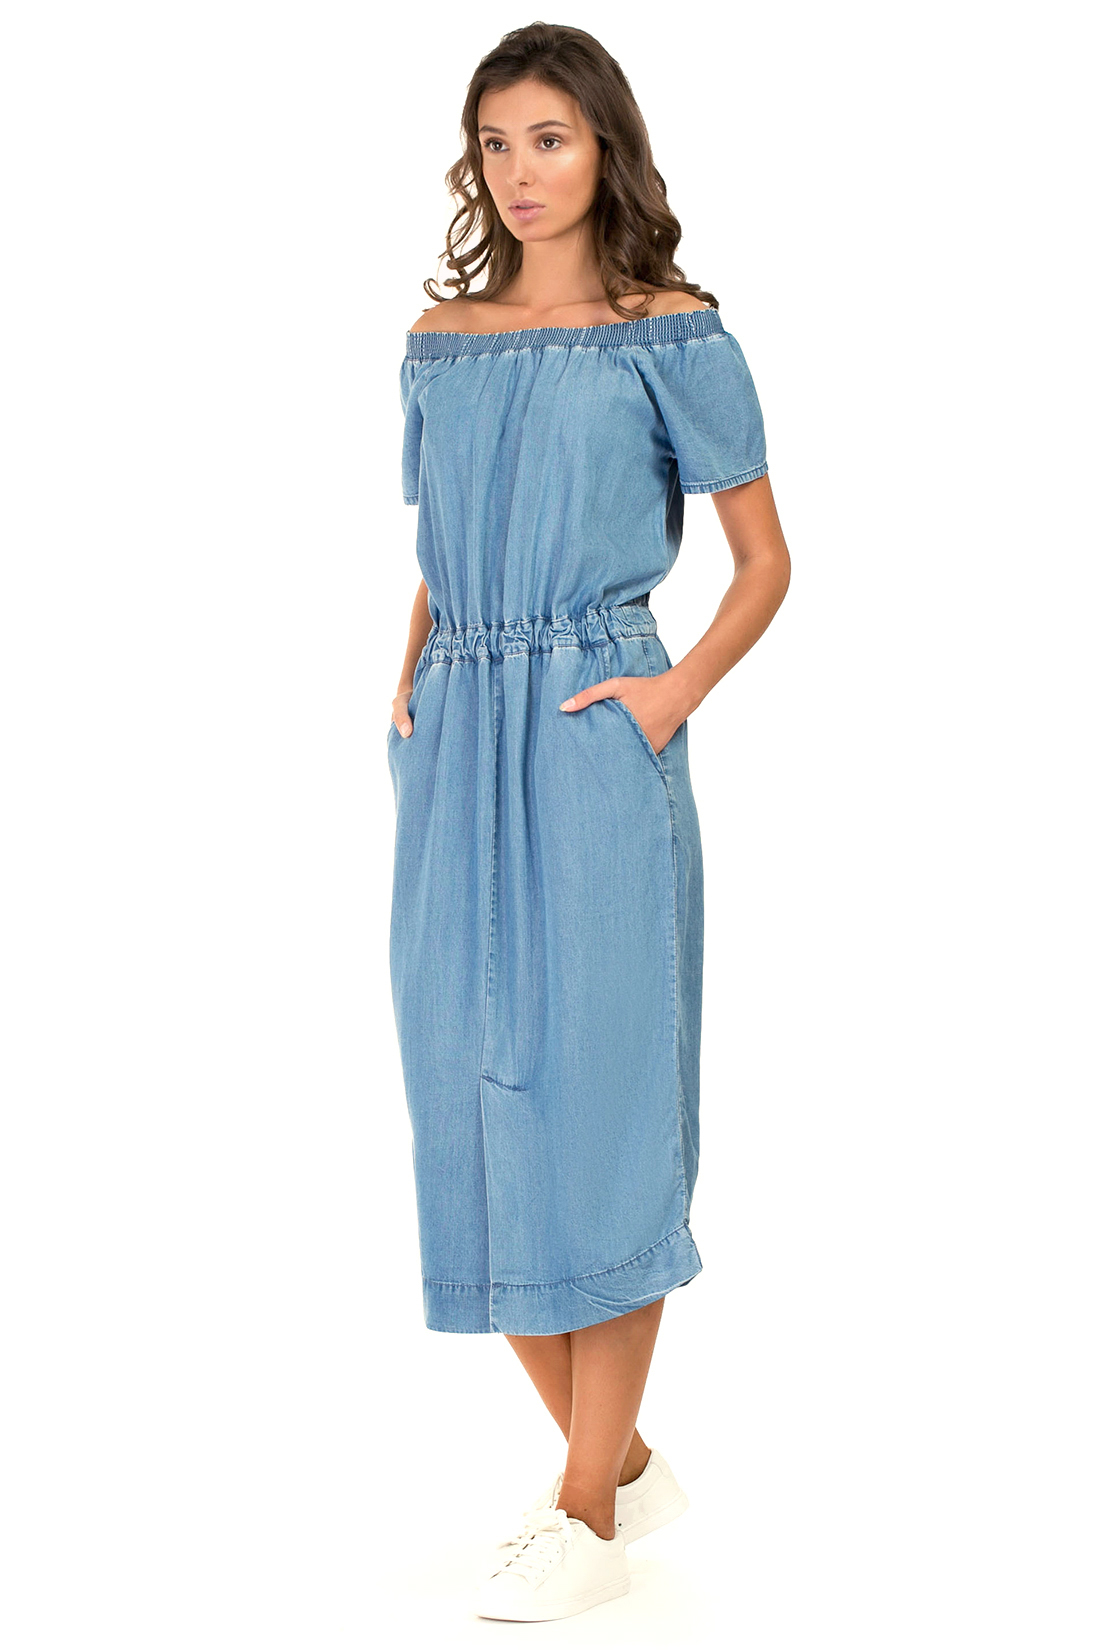 Платье с открытыми плечами из денима (арт. baon B457076), размер M, цвет light blue denim#голубой Платье с открытыми плечами из денима (арт. baon B457076) - фото 5